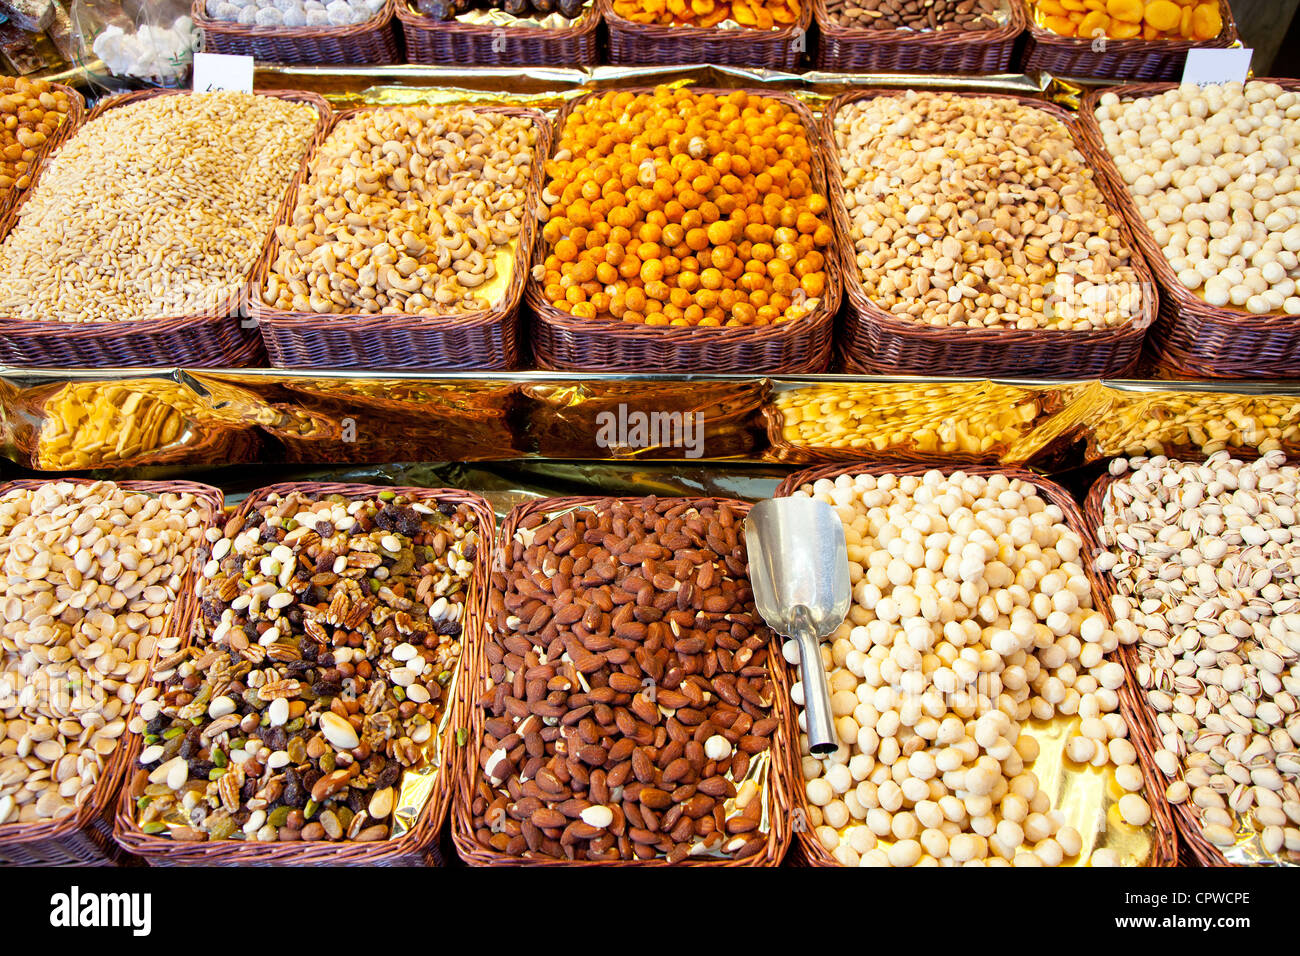 Sèches à l'affichage du marché dans une rangée d'arachides amandes Banque D'Images